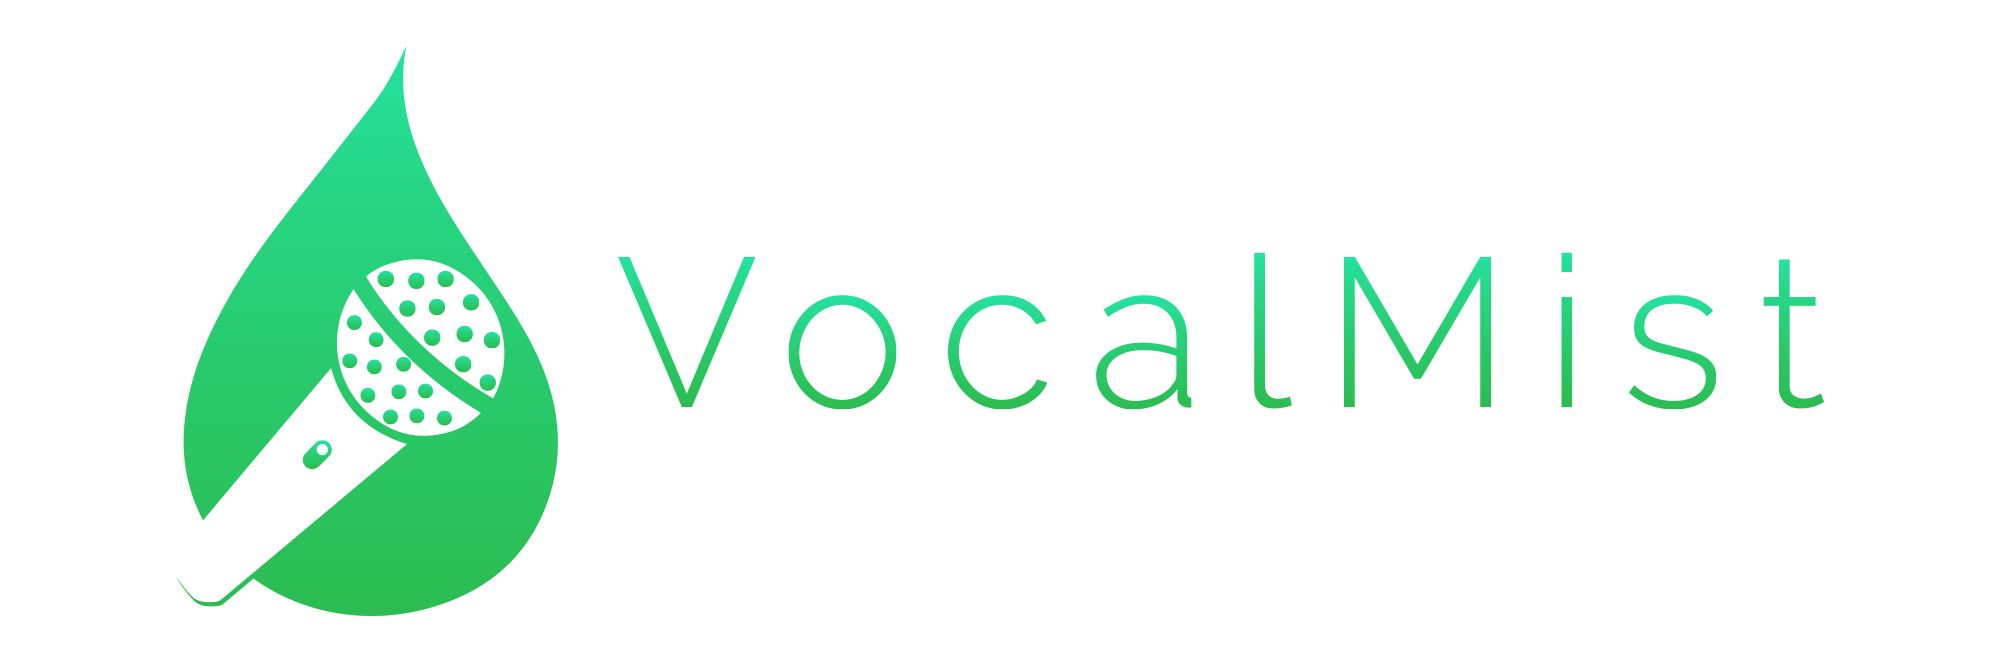 VocalMist Logo A1 darker